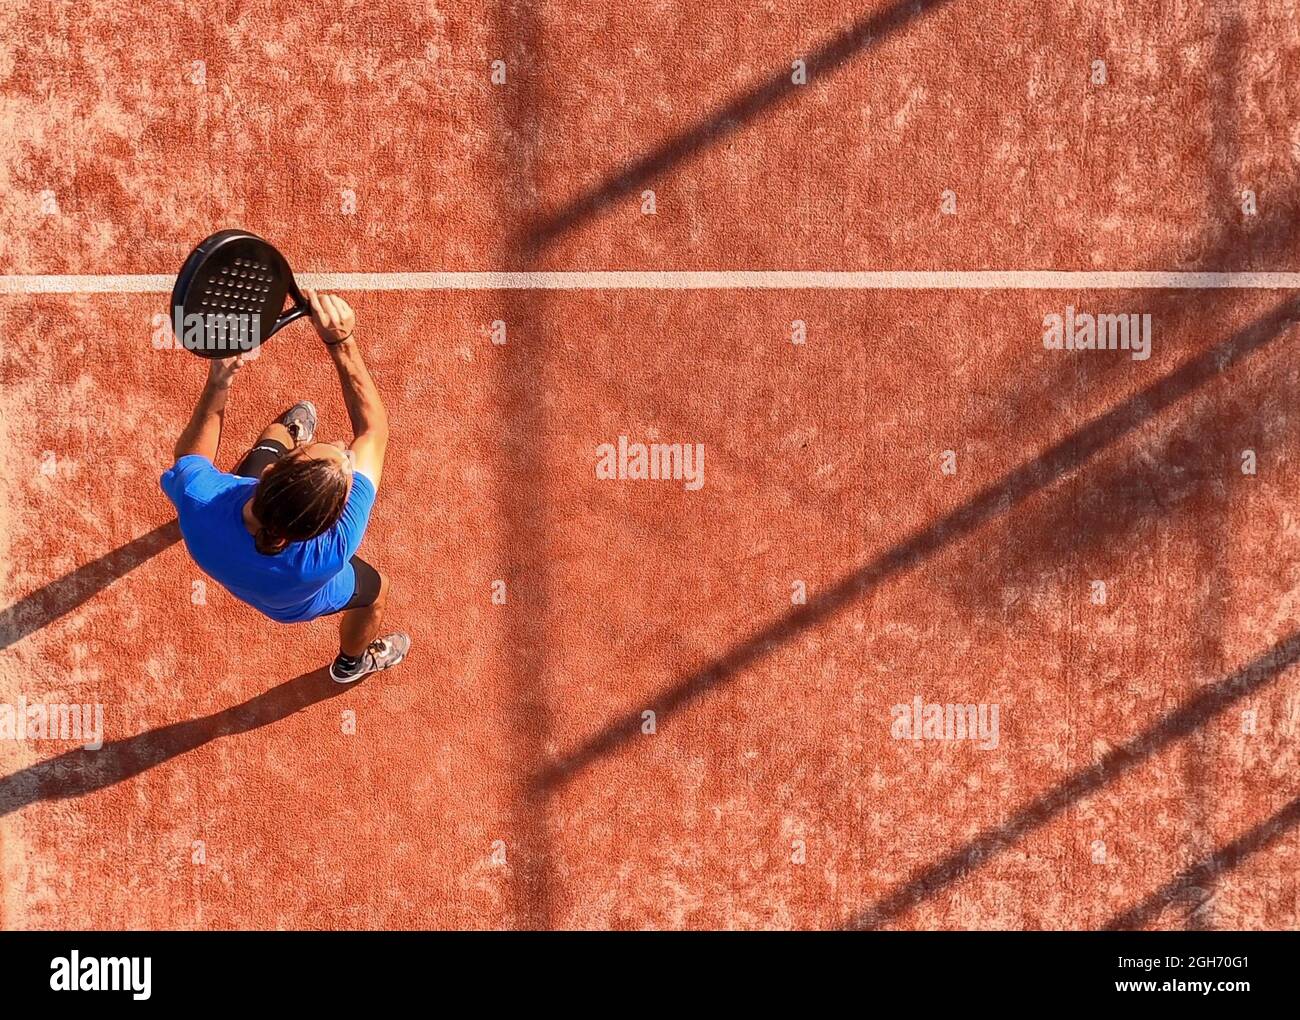 Vista desde arriba de un jugador profesional de pádel que acaba de golpear la pelota con la raqueta. Partido de Padel en una cancha al aire libre. Foto de stock